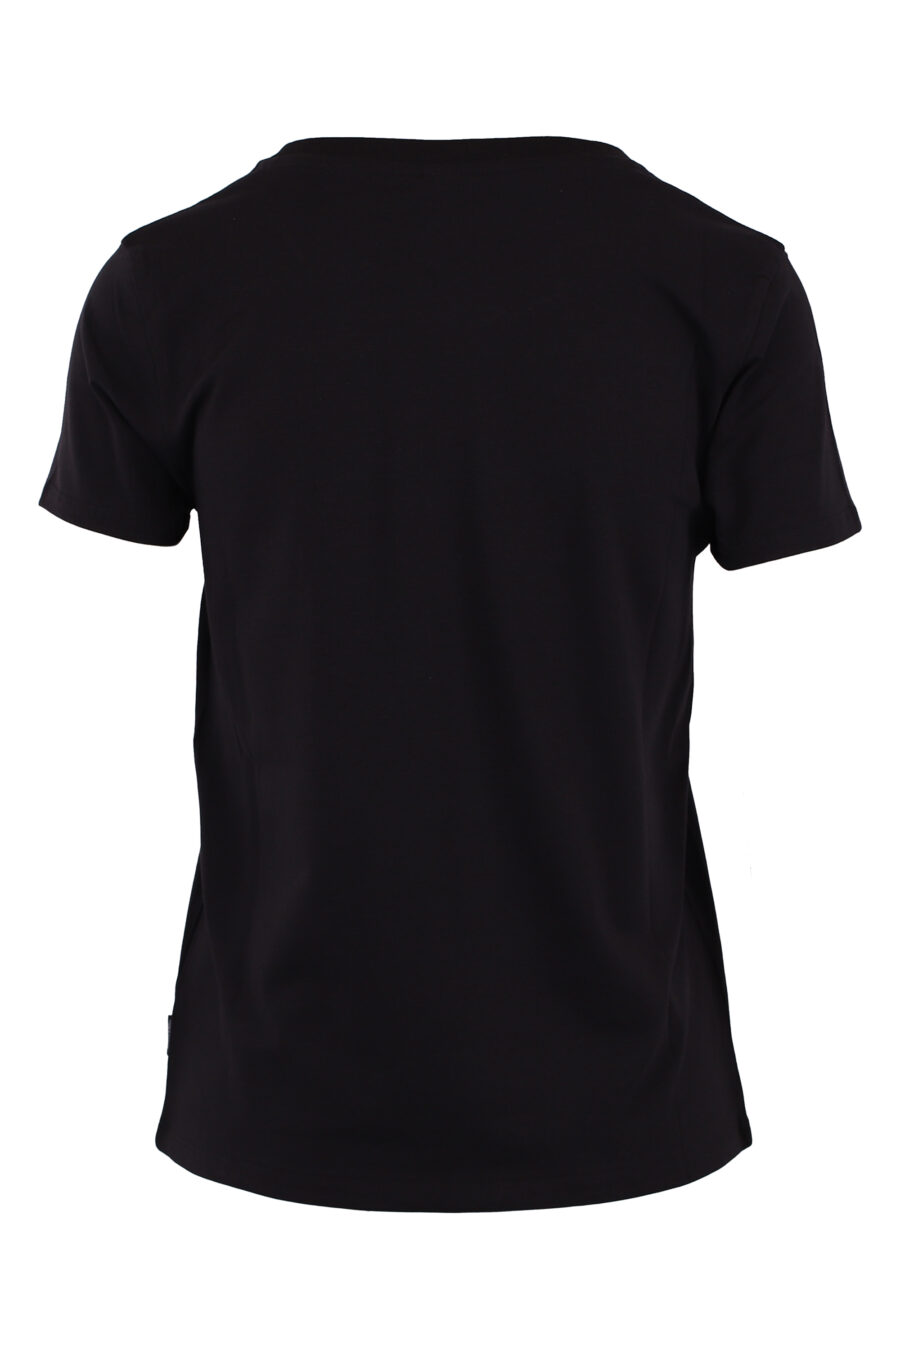 T-shirt schwarz mit kleinem Bärenlogo - IMG 6203